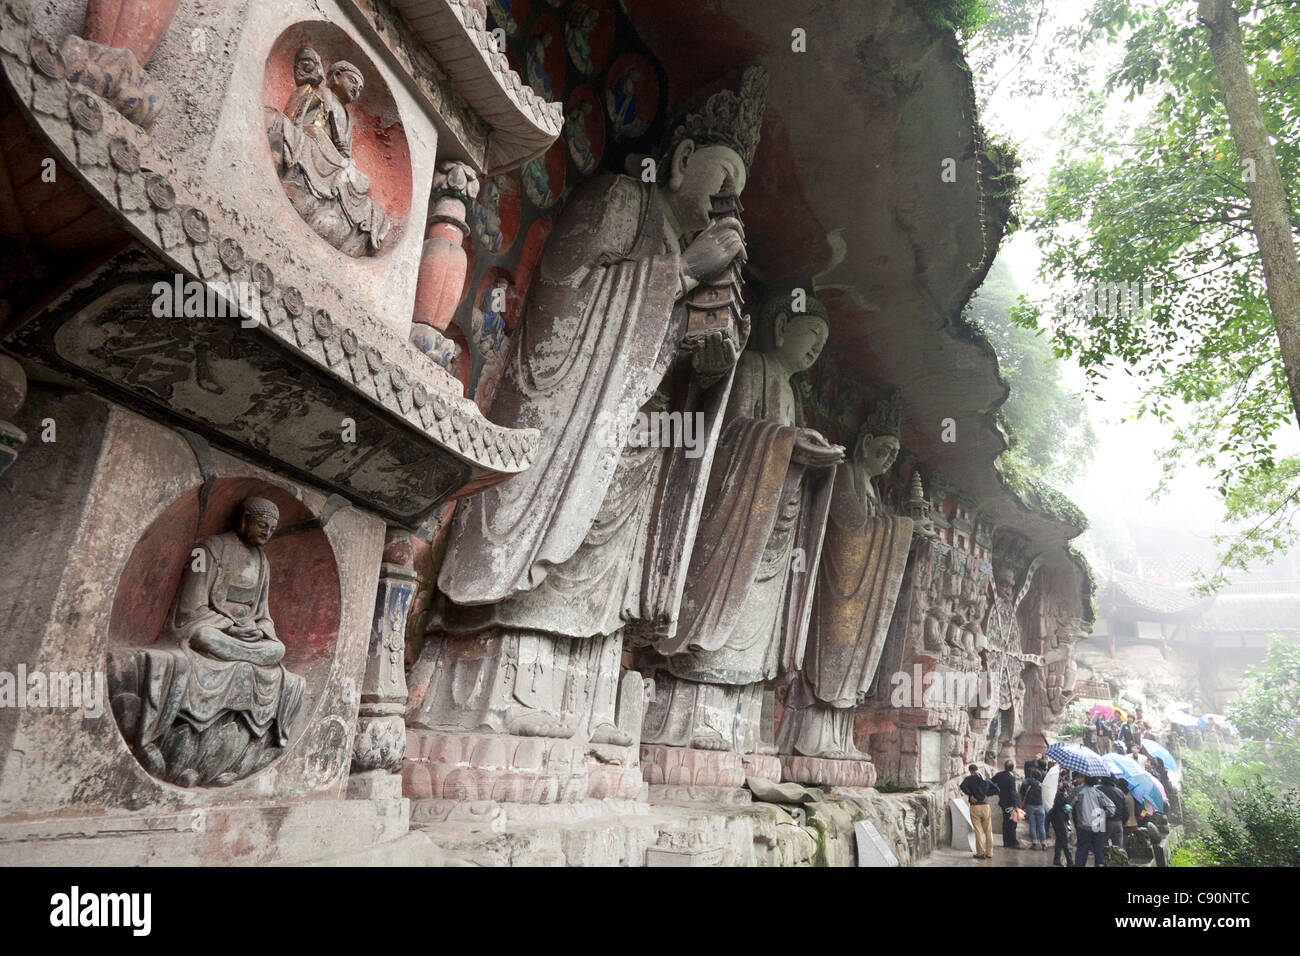 Grottes bouddhistes de Sculptures rupestres de Dazu Dazu Site du patrimoine mondial un moine bouddhiste a commencé à faire des sculptures en la roche dans le 11e cen Banque D'Images